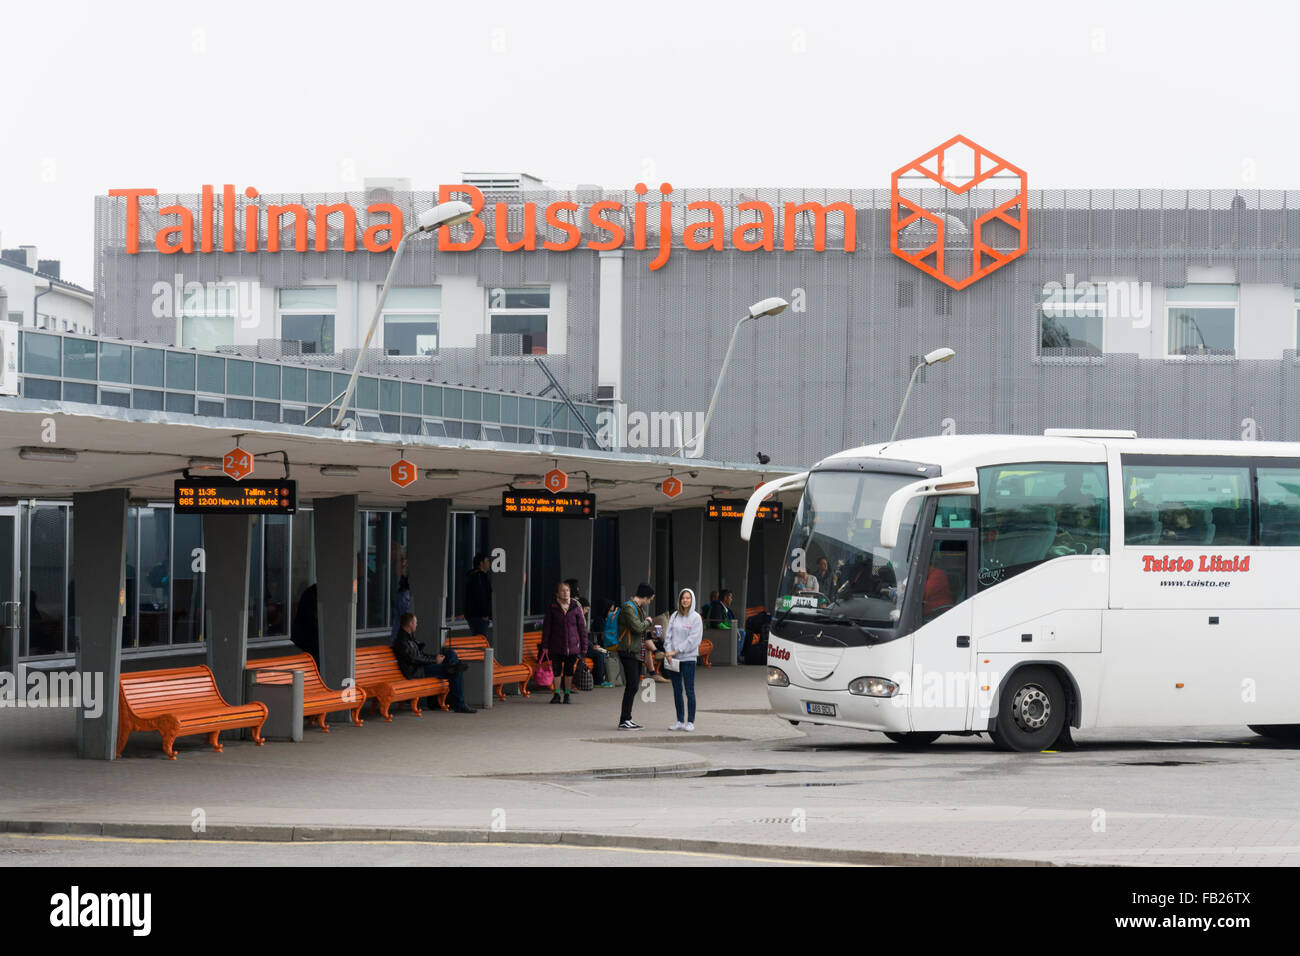 Taisto liinid bus at Tallinn bus station (Tallinna bussijaam) in Stock  Photo - Alamy